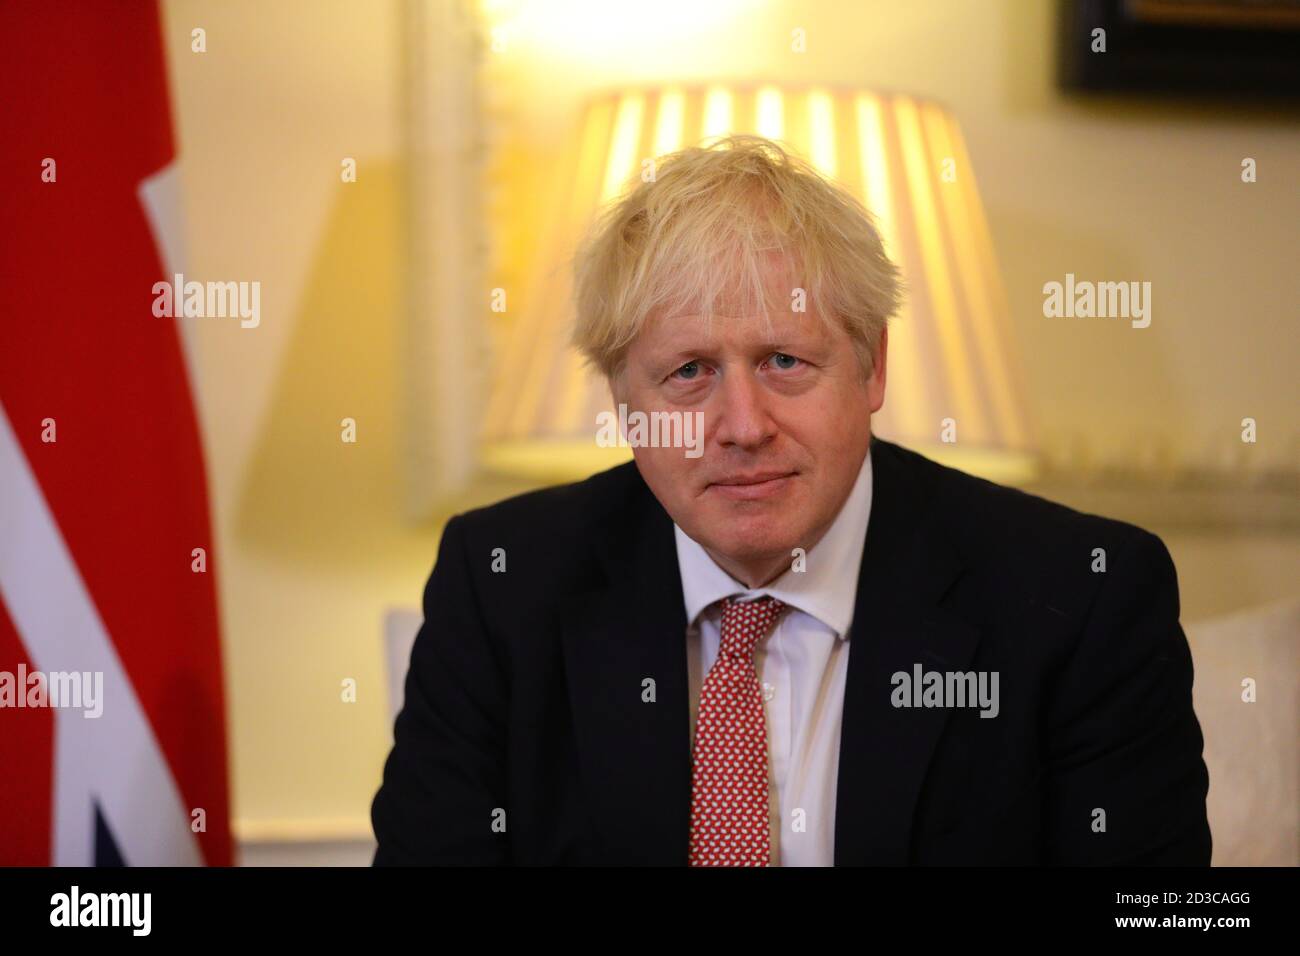 El primer ministro Boris Johnson, durante una reunión con el presidente de Ucrania, Volodymyr Zelenskyy, en Downing Street, Londres, para firmar un acuerdo de asociación estratégica con el presidente frente al "comportamiento desestabilizante" de Rusia hacia el país. Foto de stock